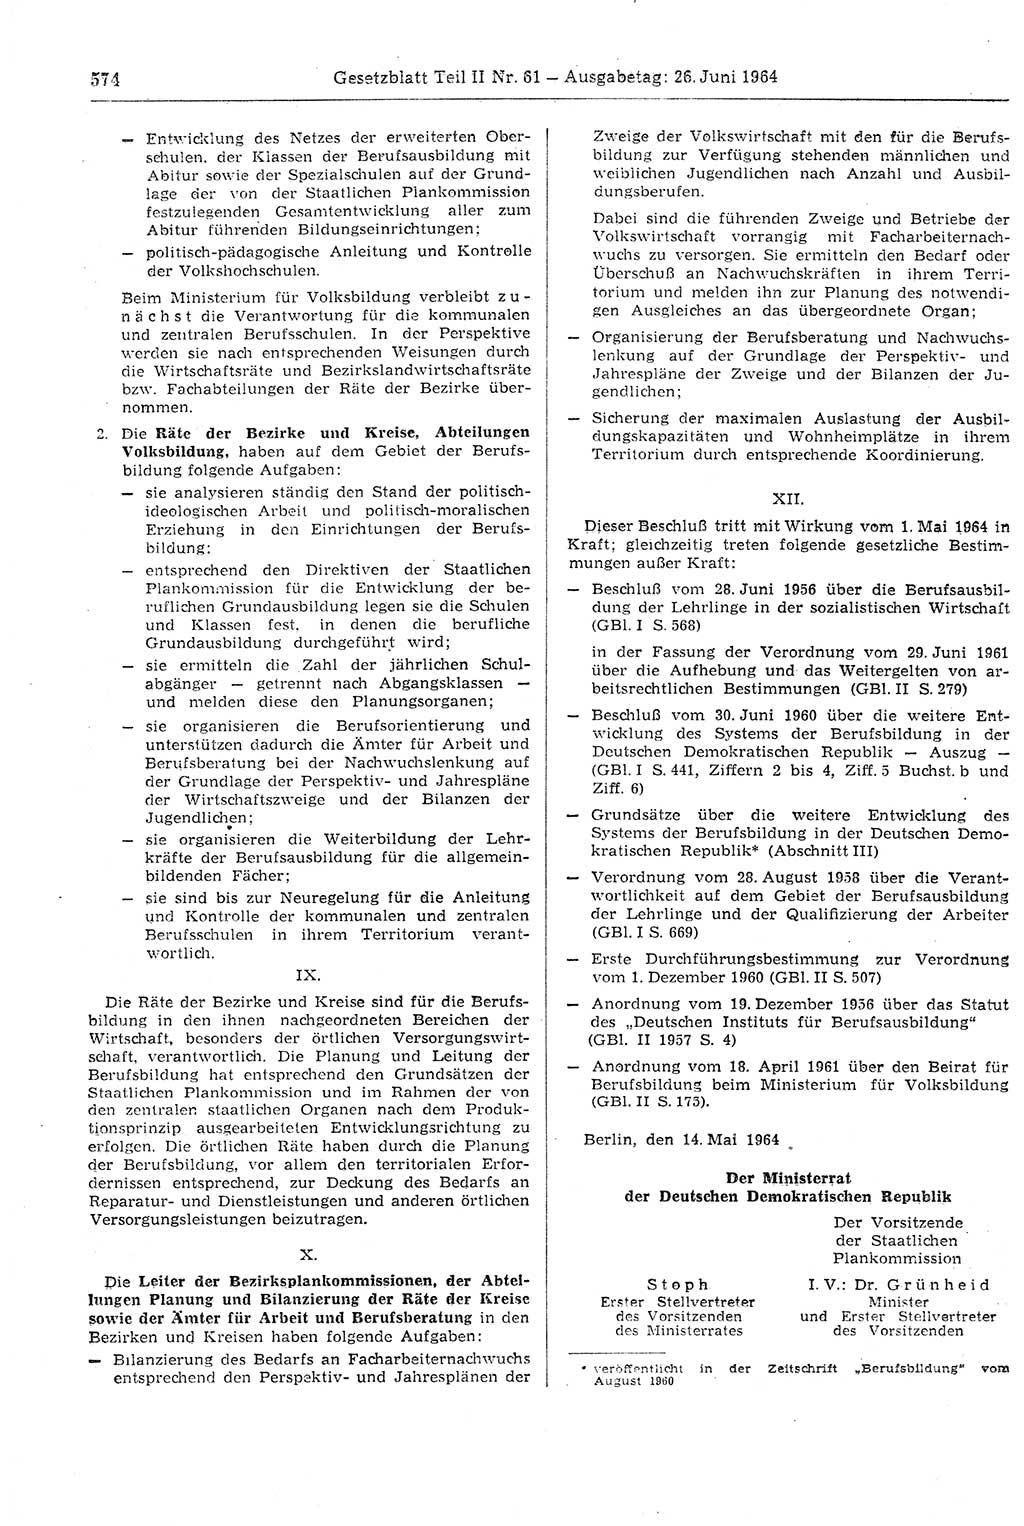 Gesetzblatt (GBl.) der Deutschen Demokratischen Republik (DDR) Teil ⅠⅠ 1964, Seite 574 (GBl. DDR ⅠⅠ 1964, S. 574)